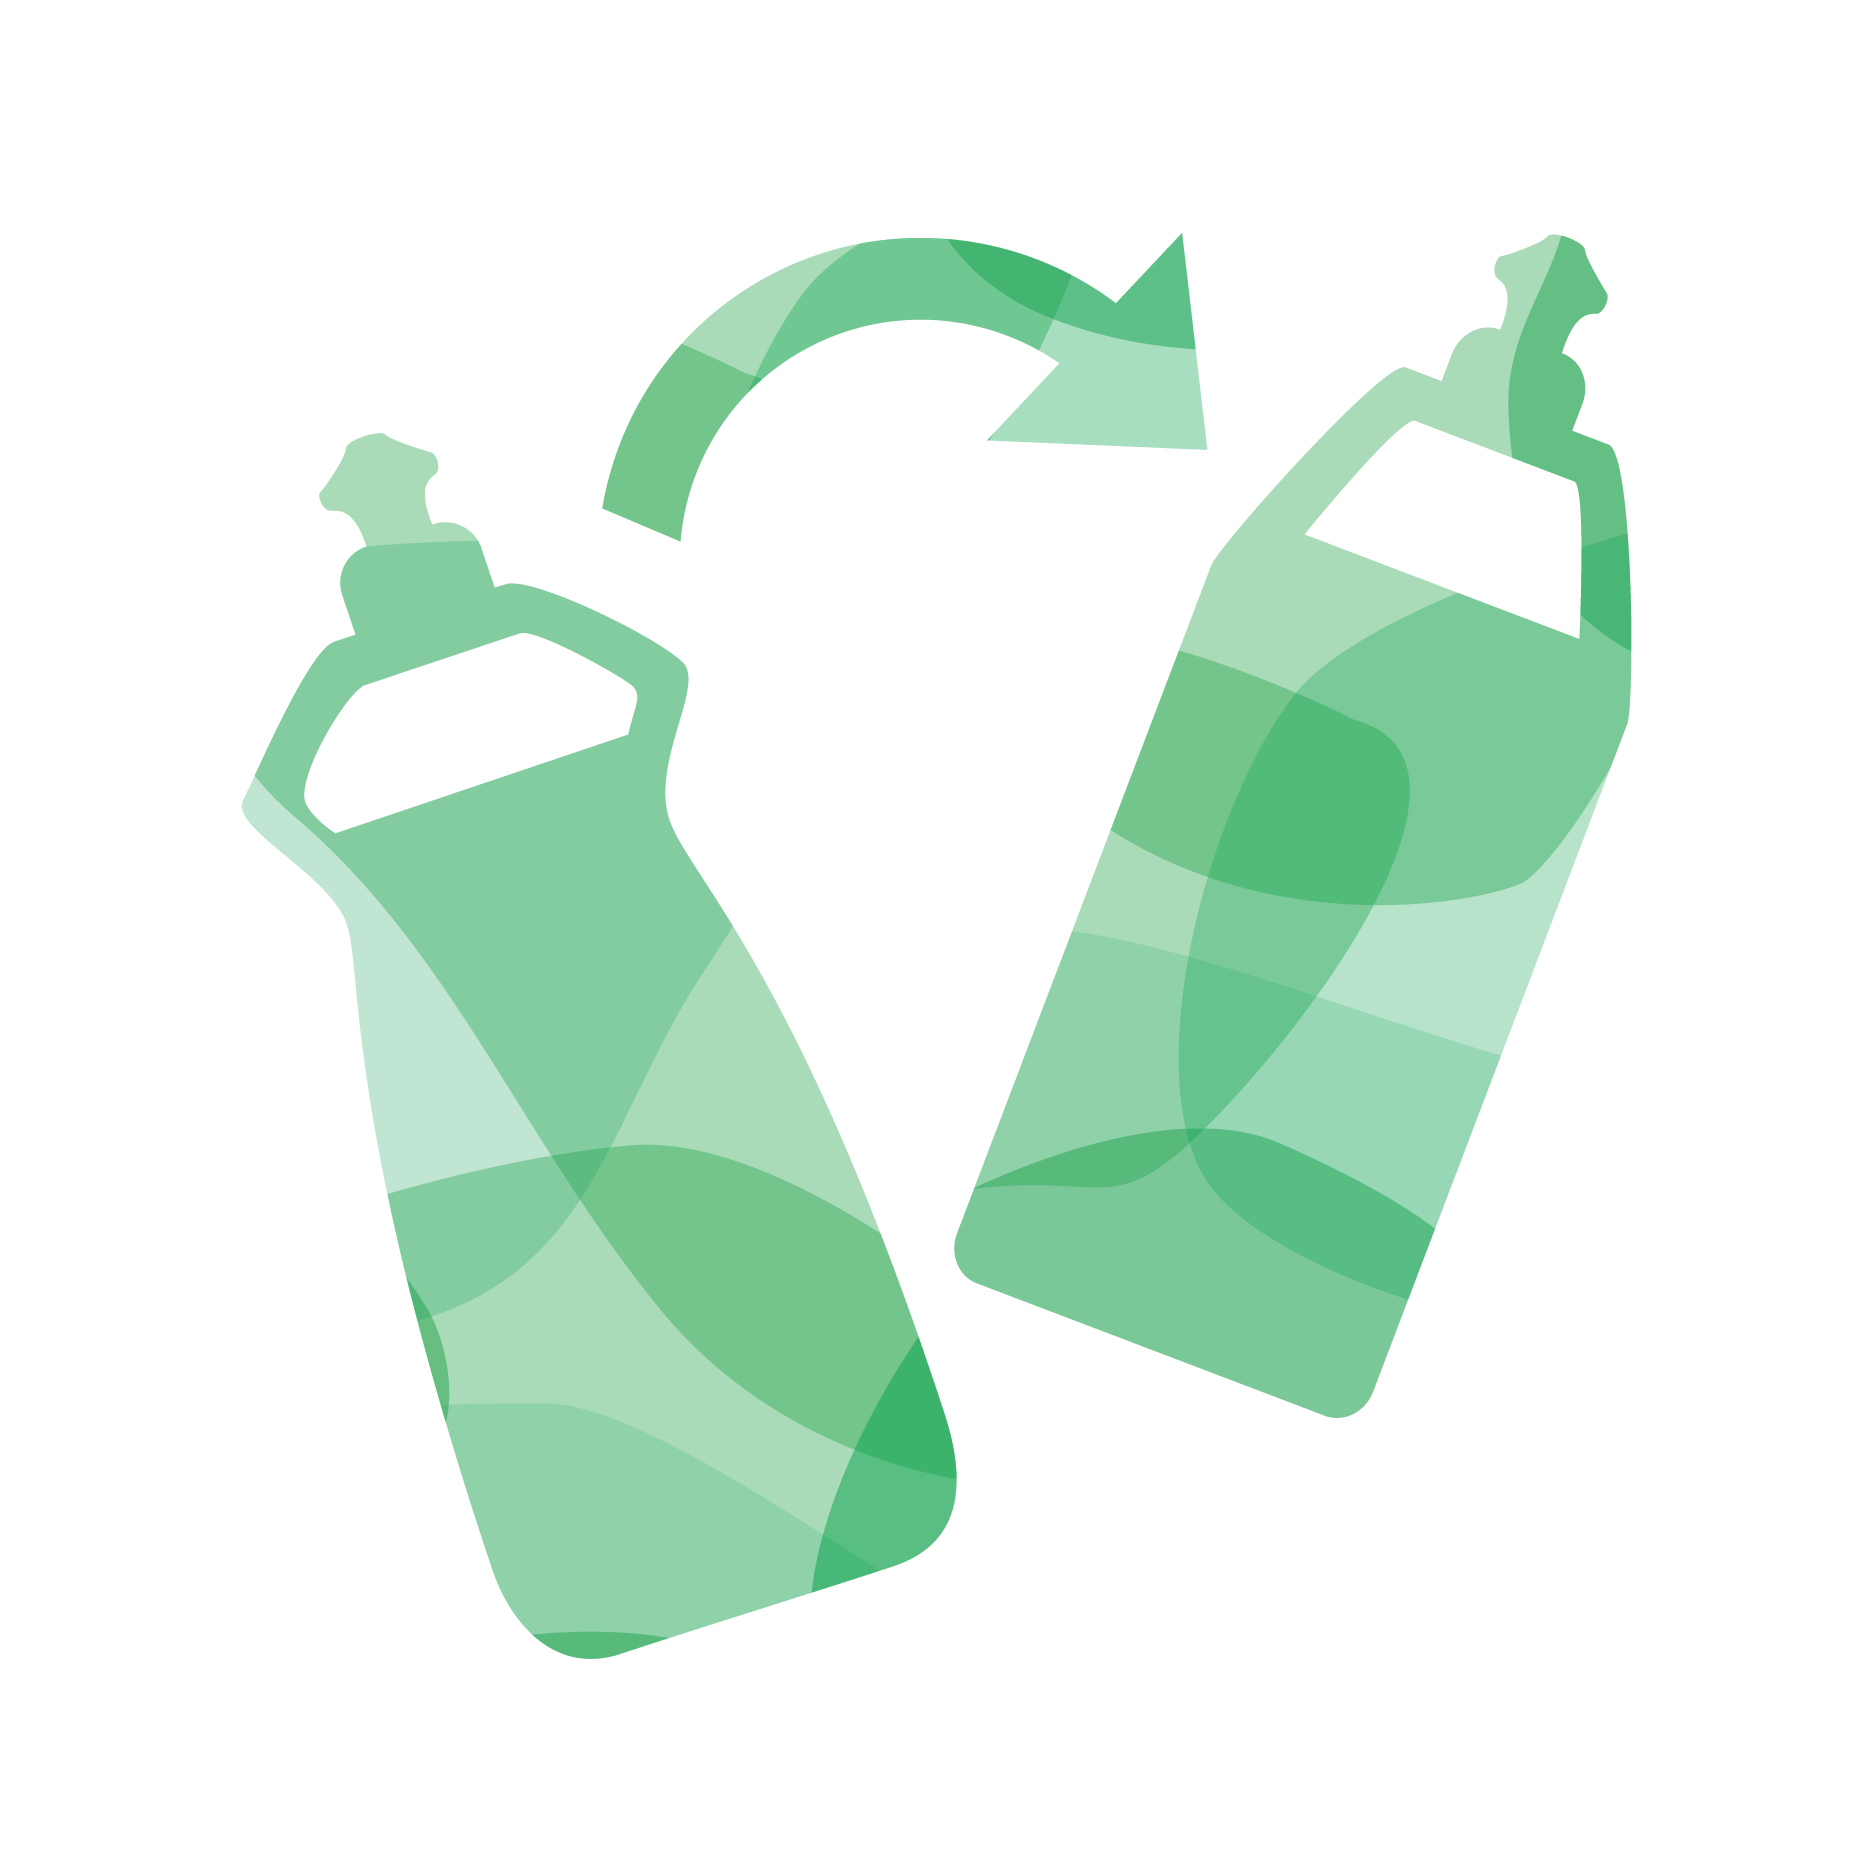 Green illustration of natural leather cleaner bottles